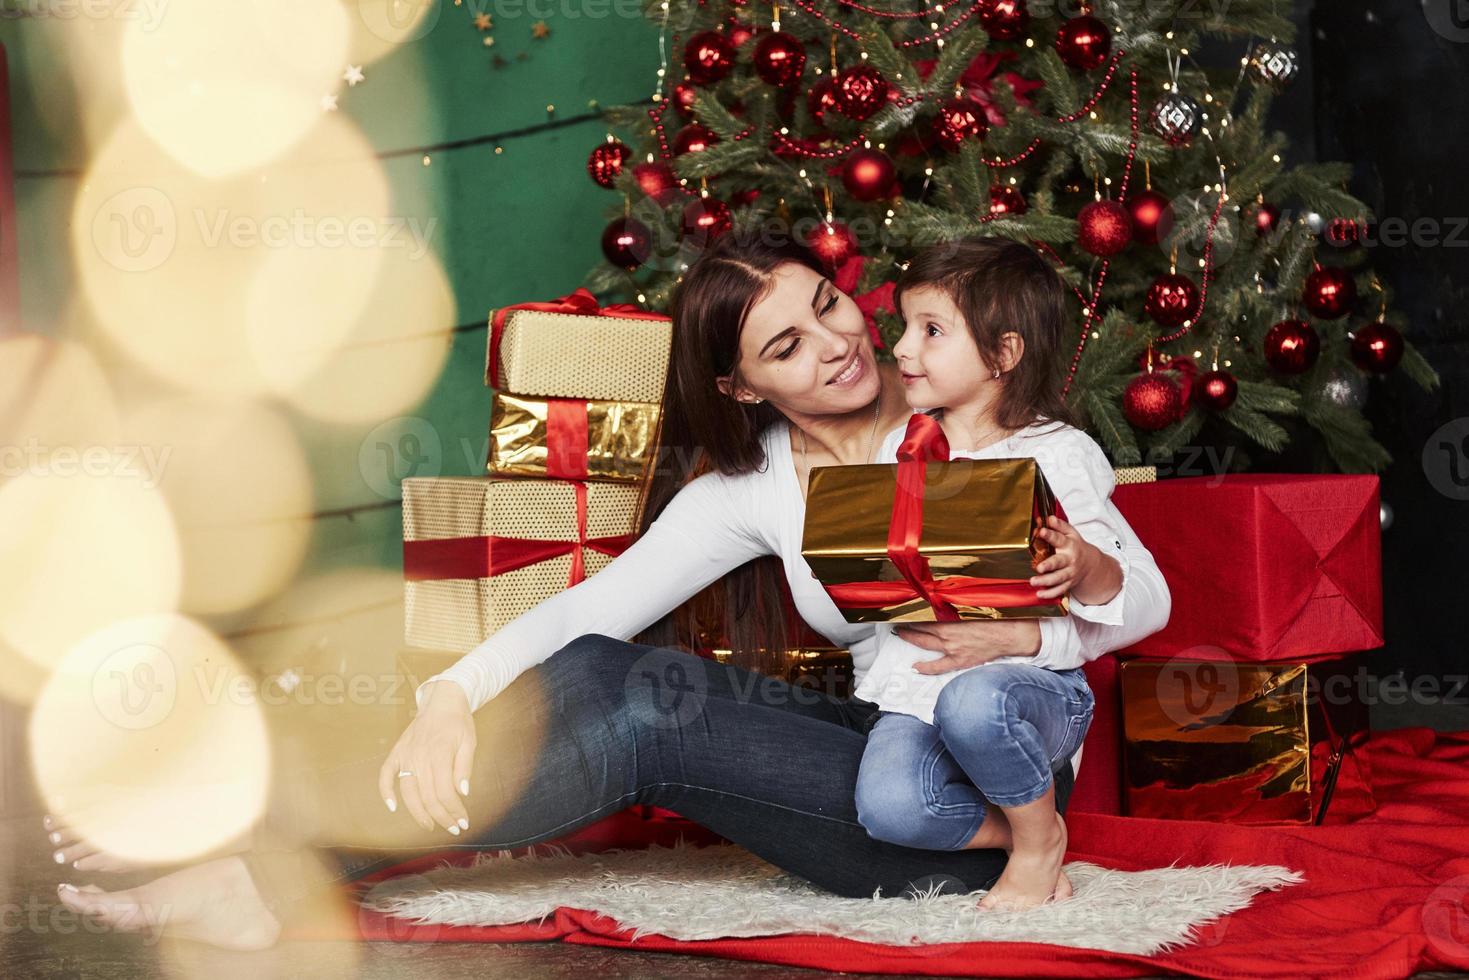 vakantie is mensen verenigen. vrolijke moeder en dochter zitten in de buurt van de kerstboom die erachter zit. schattig portret foto